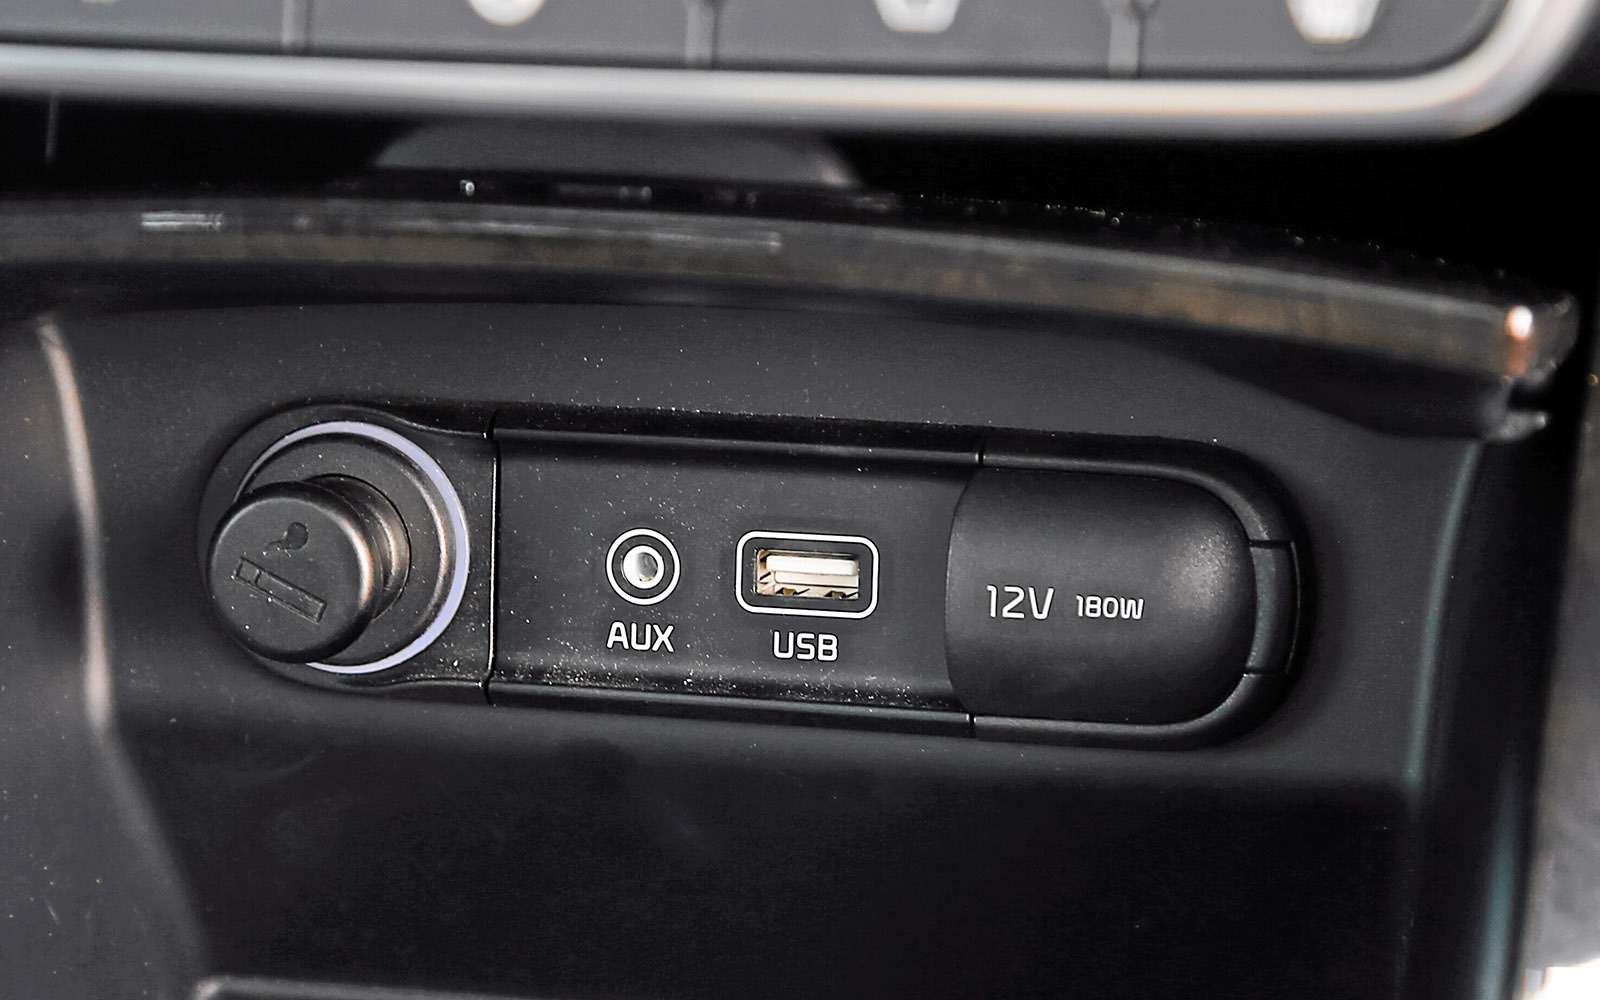 Под рядом клавиш, упруго подающихся при включении обогревов руля и сидений, а также вентиляции кресел, – разъемы USB и AUX.